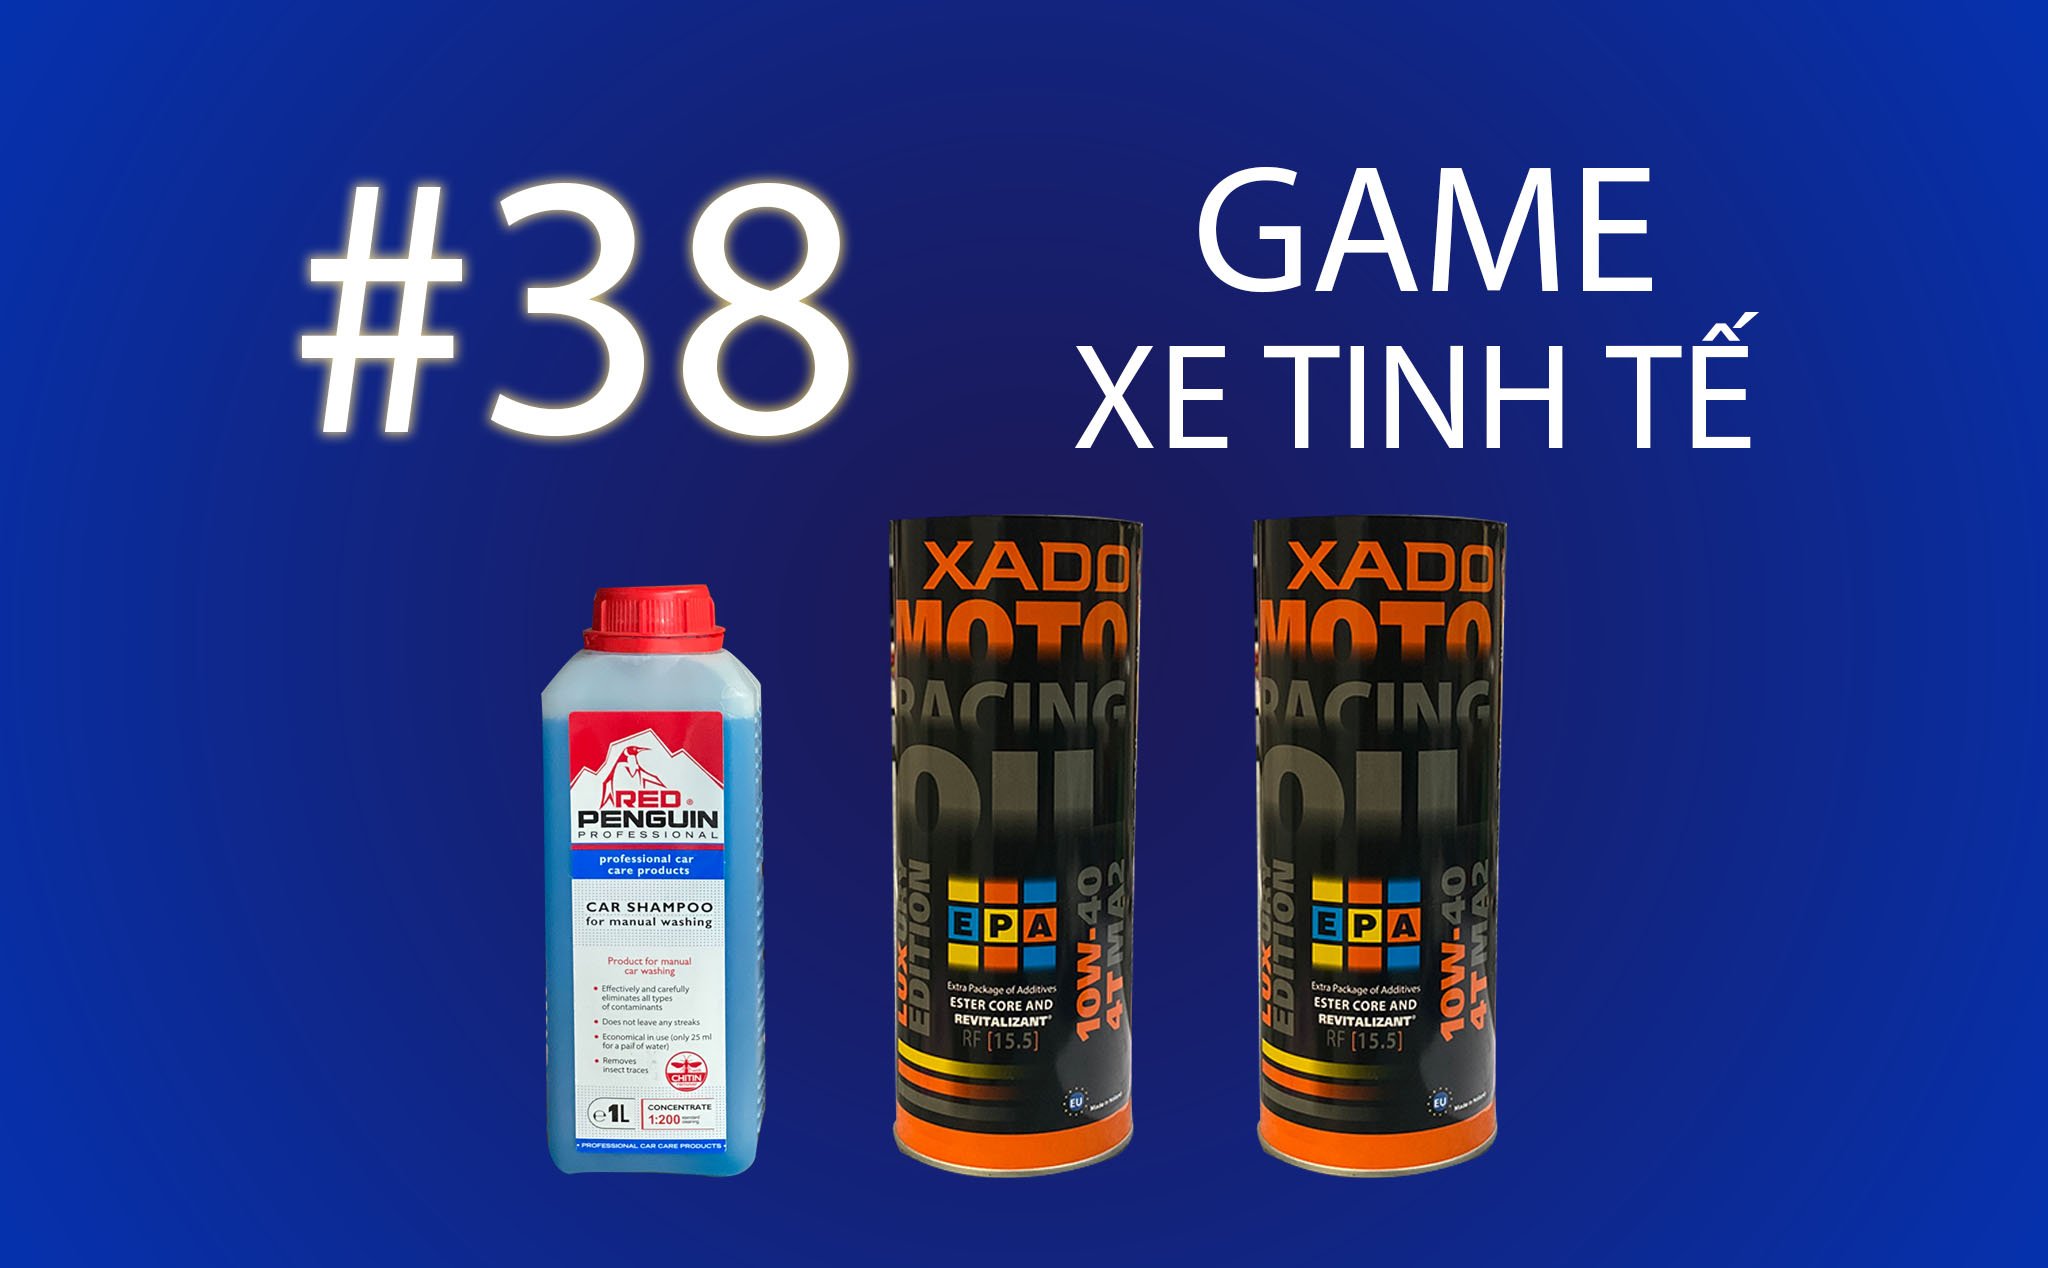 Game Xe Tinh tế #38: Tặng 2 bình nhớt xe côn tay XADO và 1 bình nước rửa xe